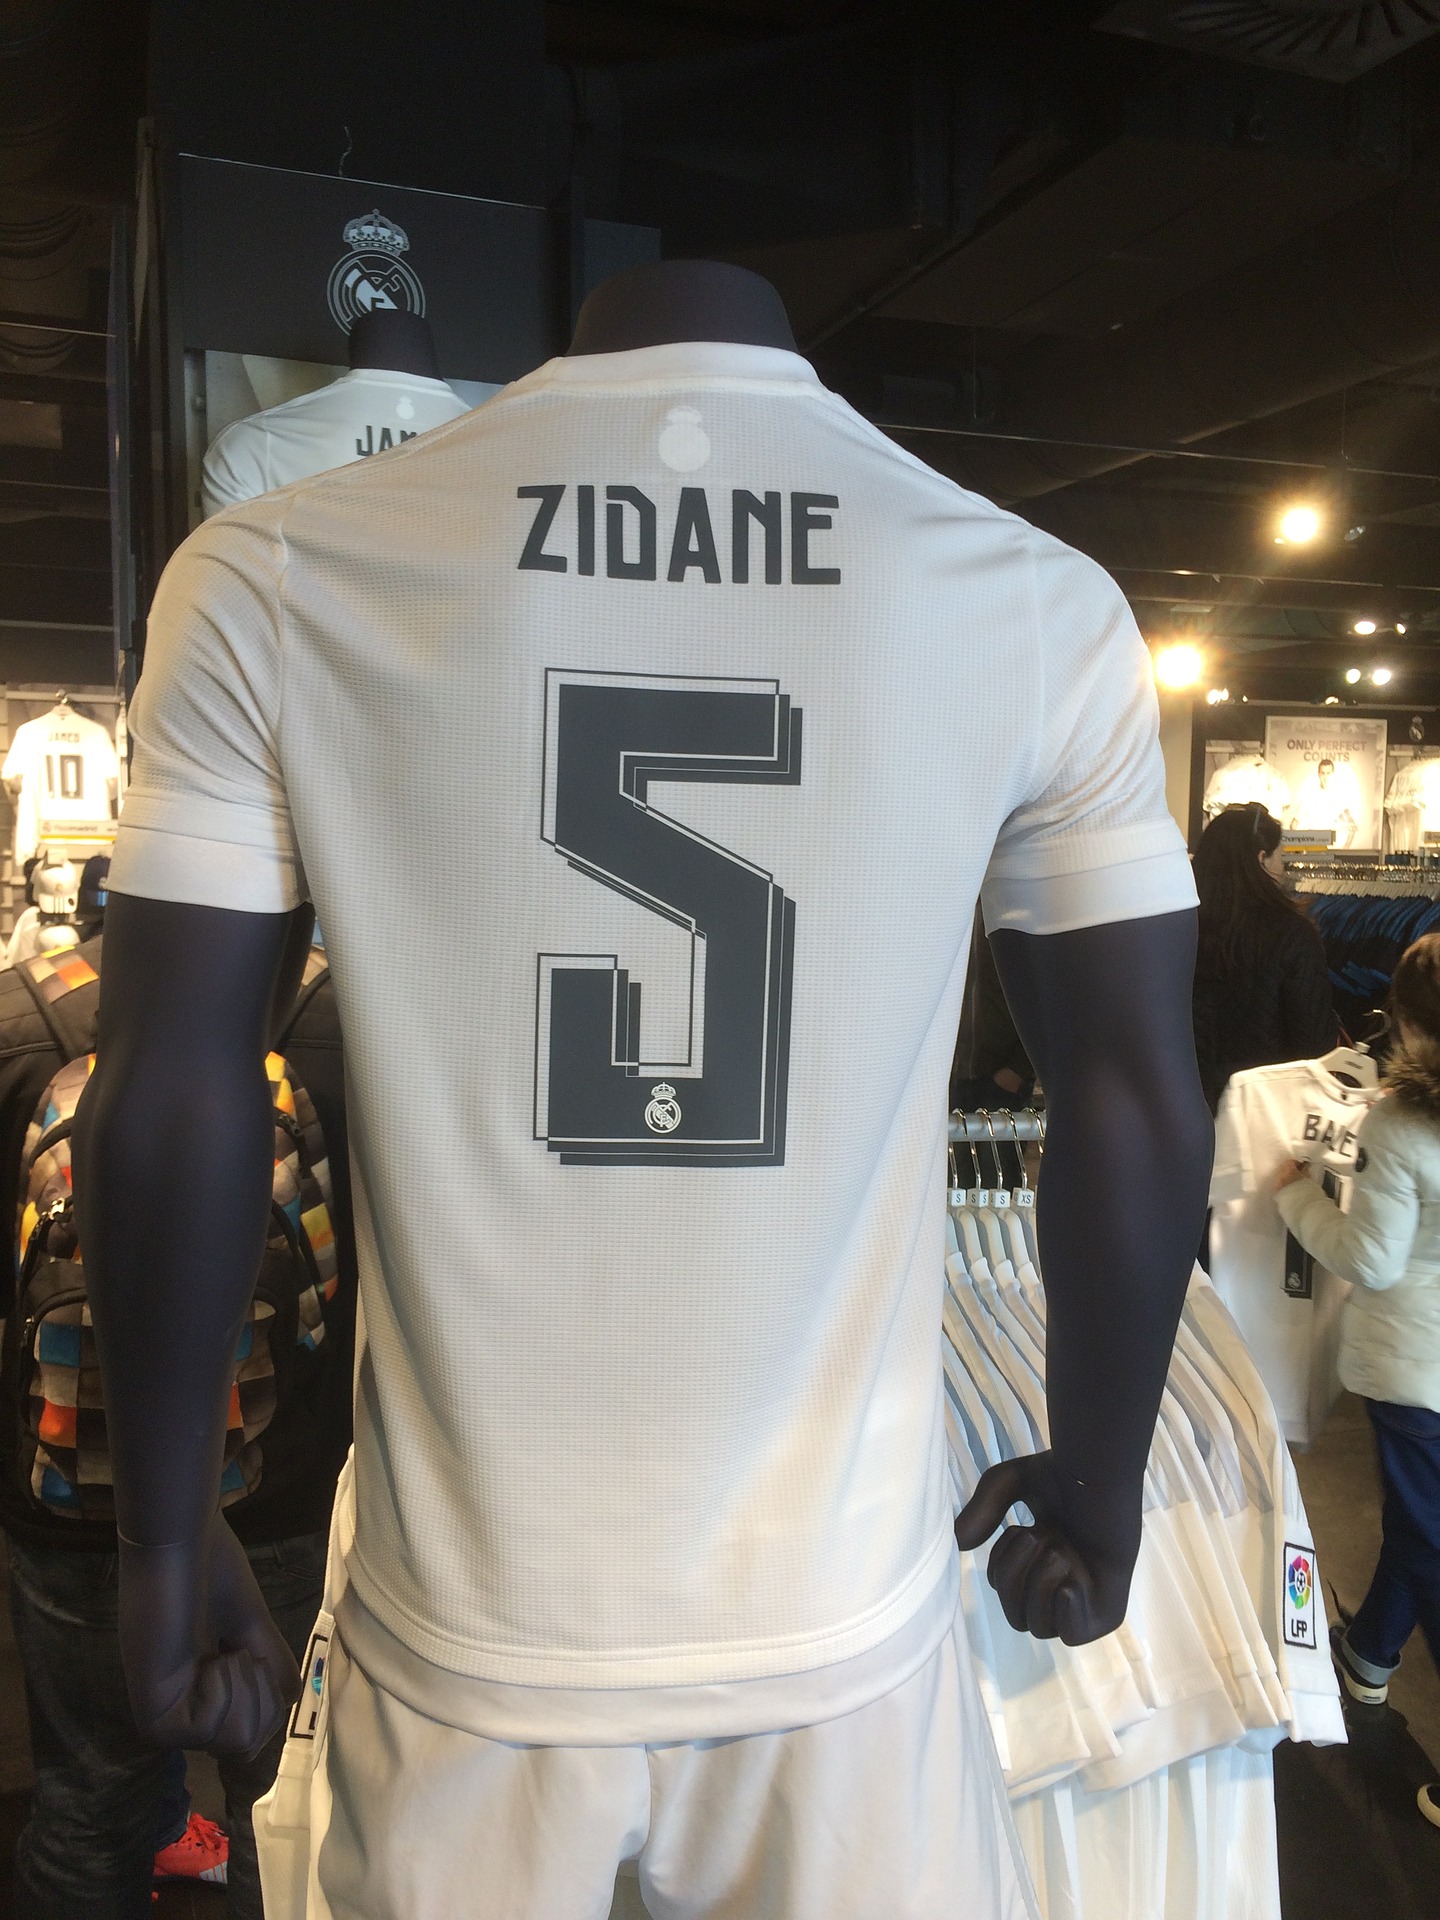 Zinedine Zidane obejmie posadę w PSG? Fani Olympique Marsylia z apelem do trenera